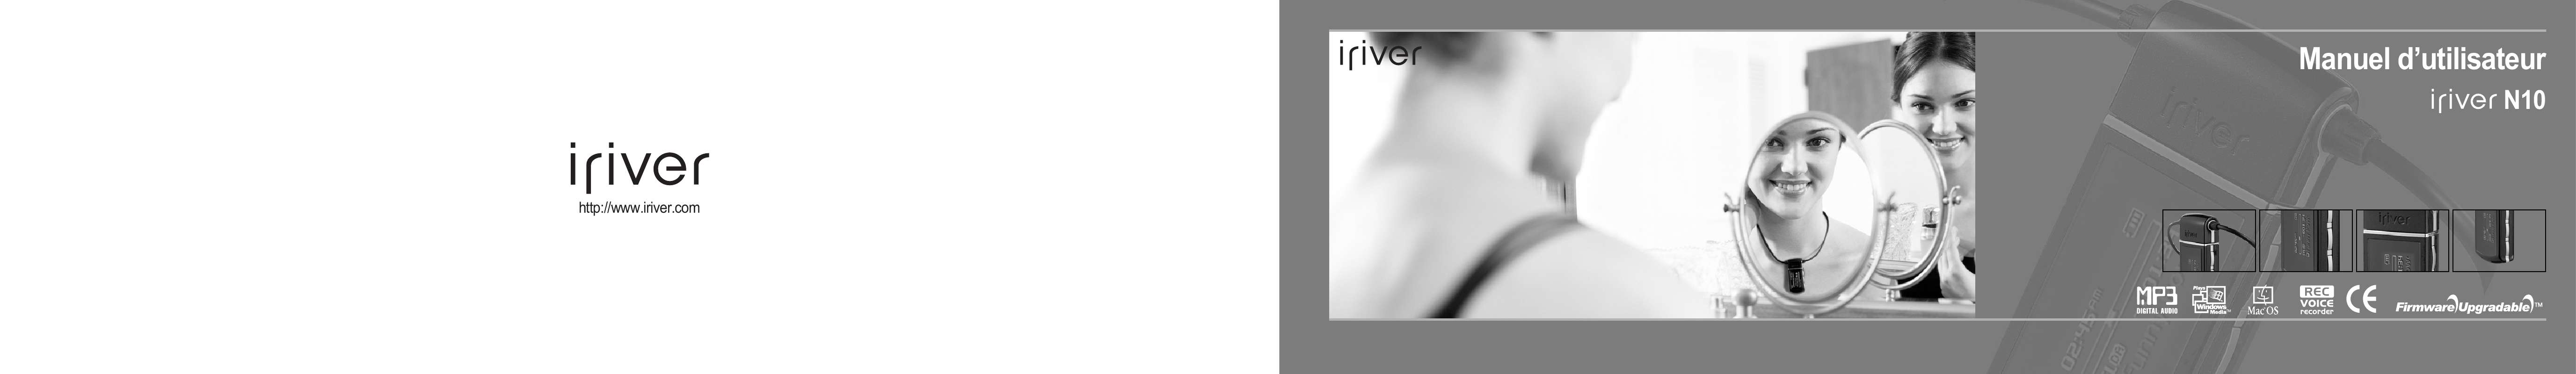 Guide utilisation IRIVER N10  de la marque IRIVER